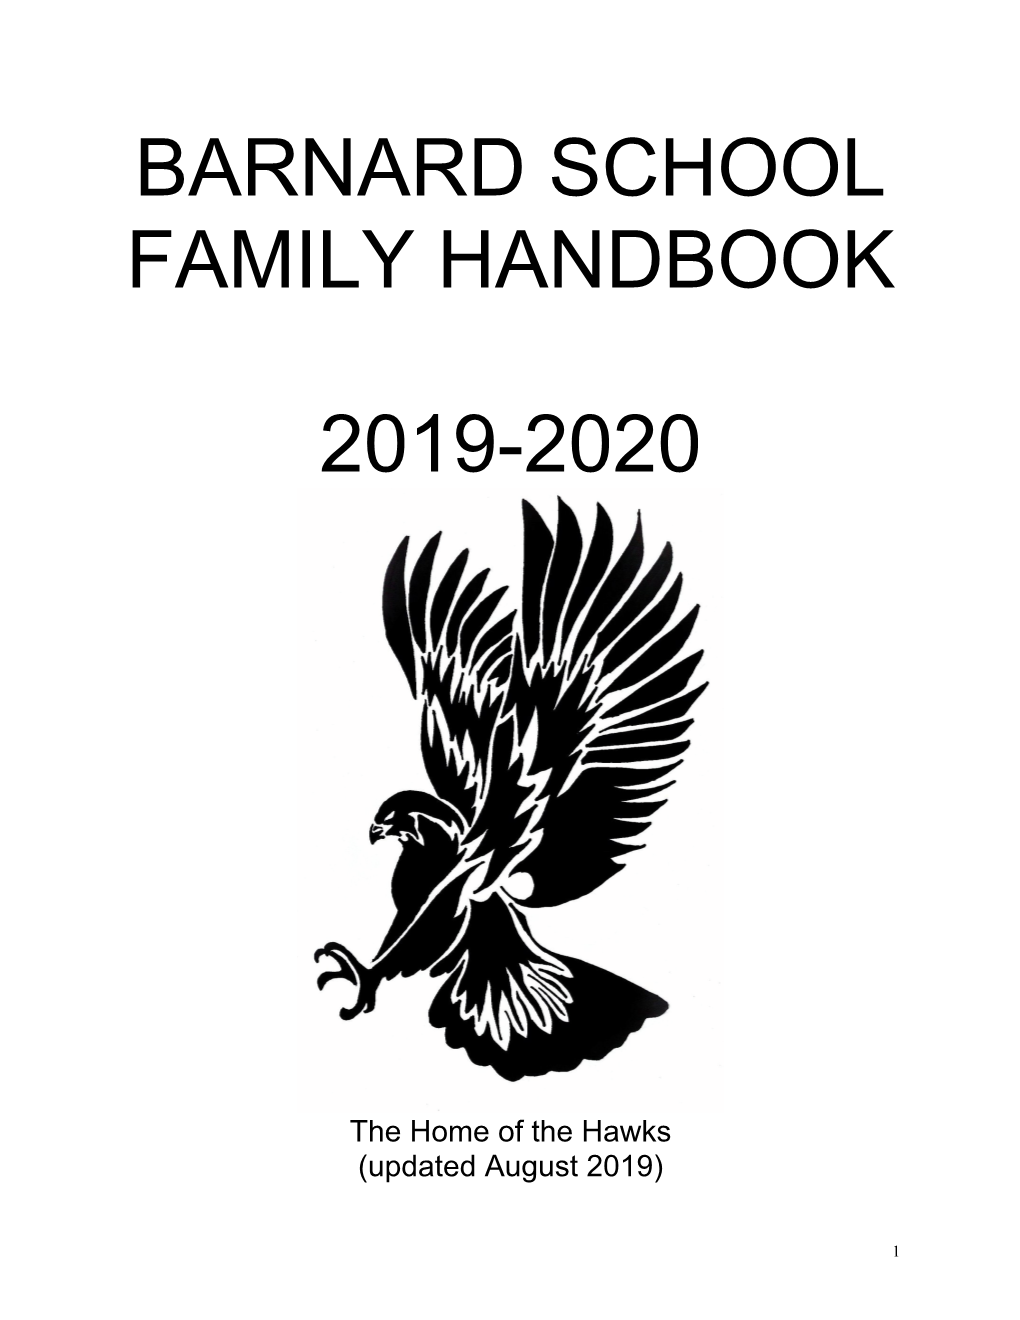 Barnard School Family Handbook 2019-2020